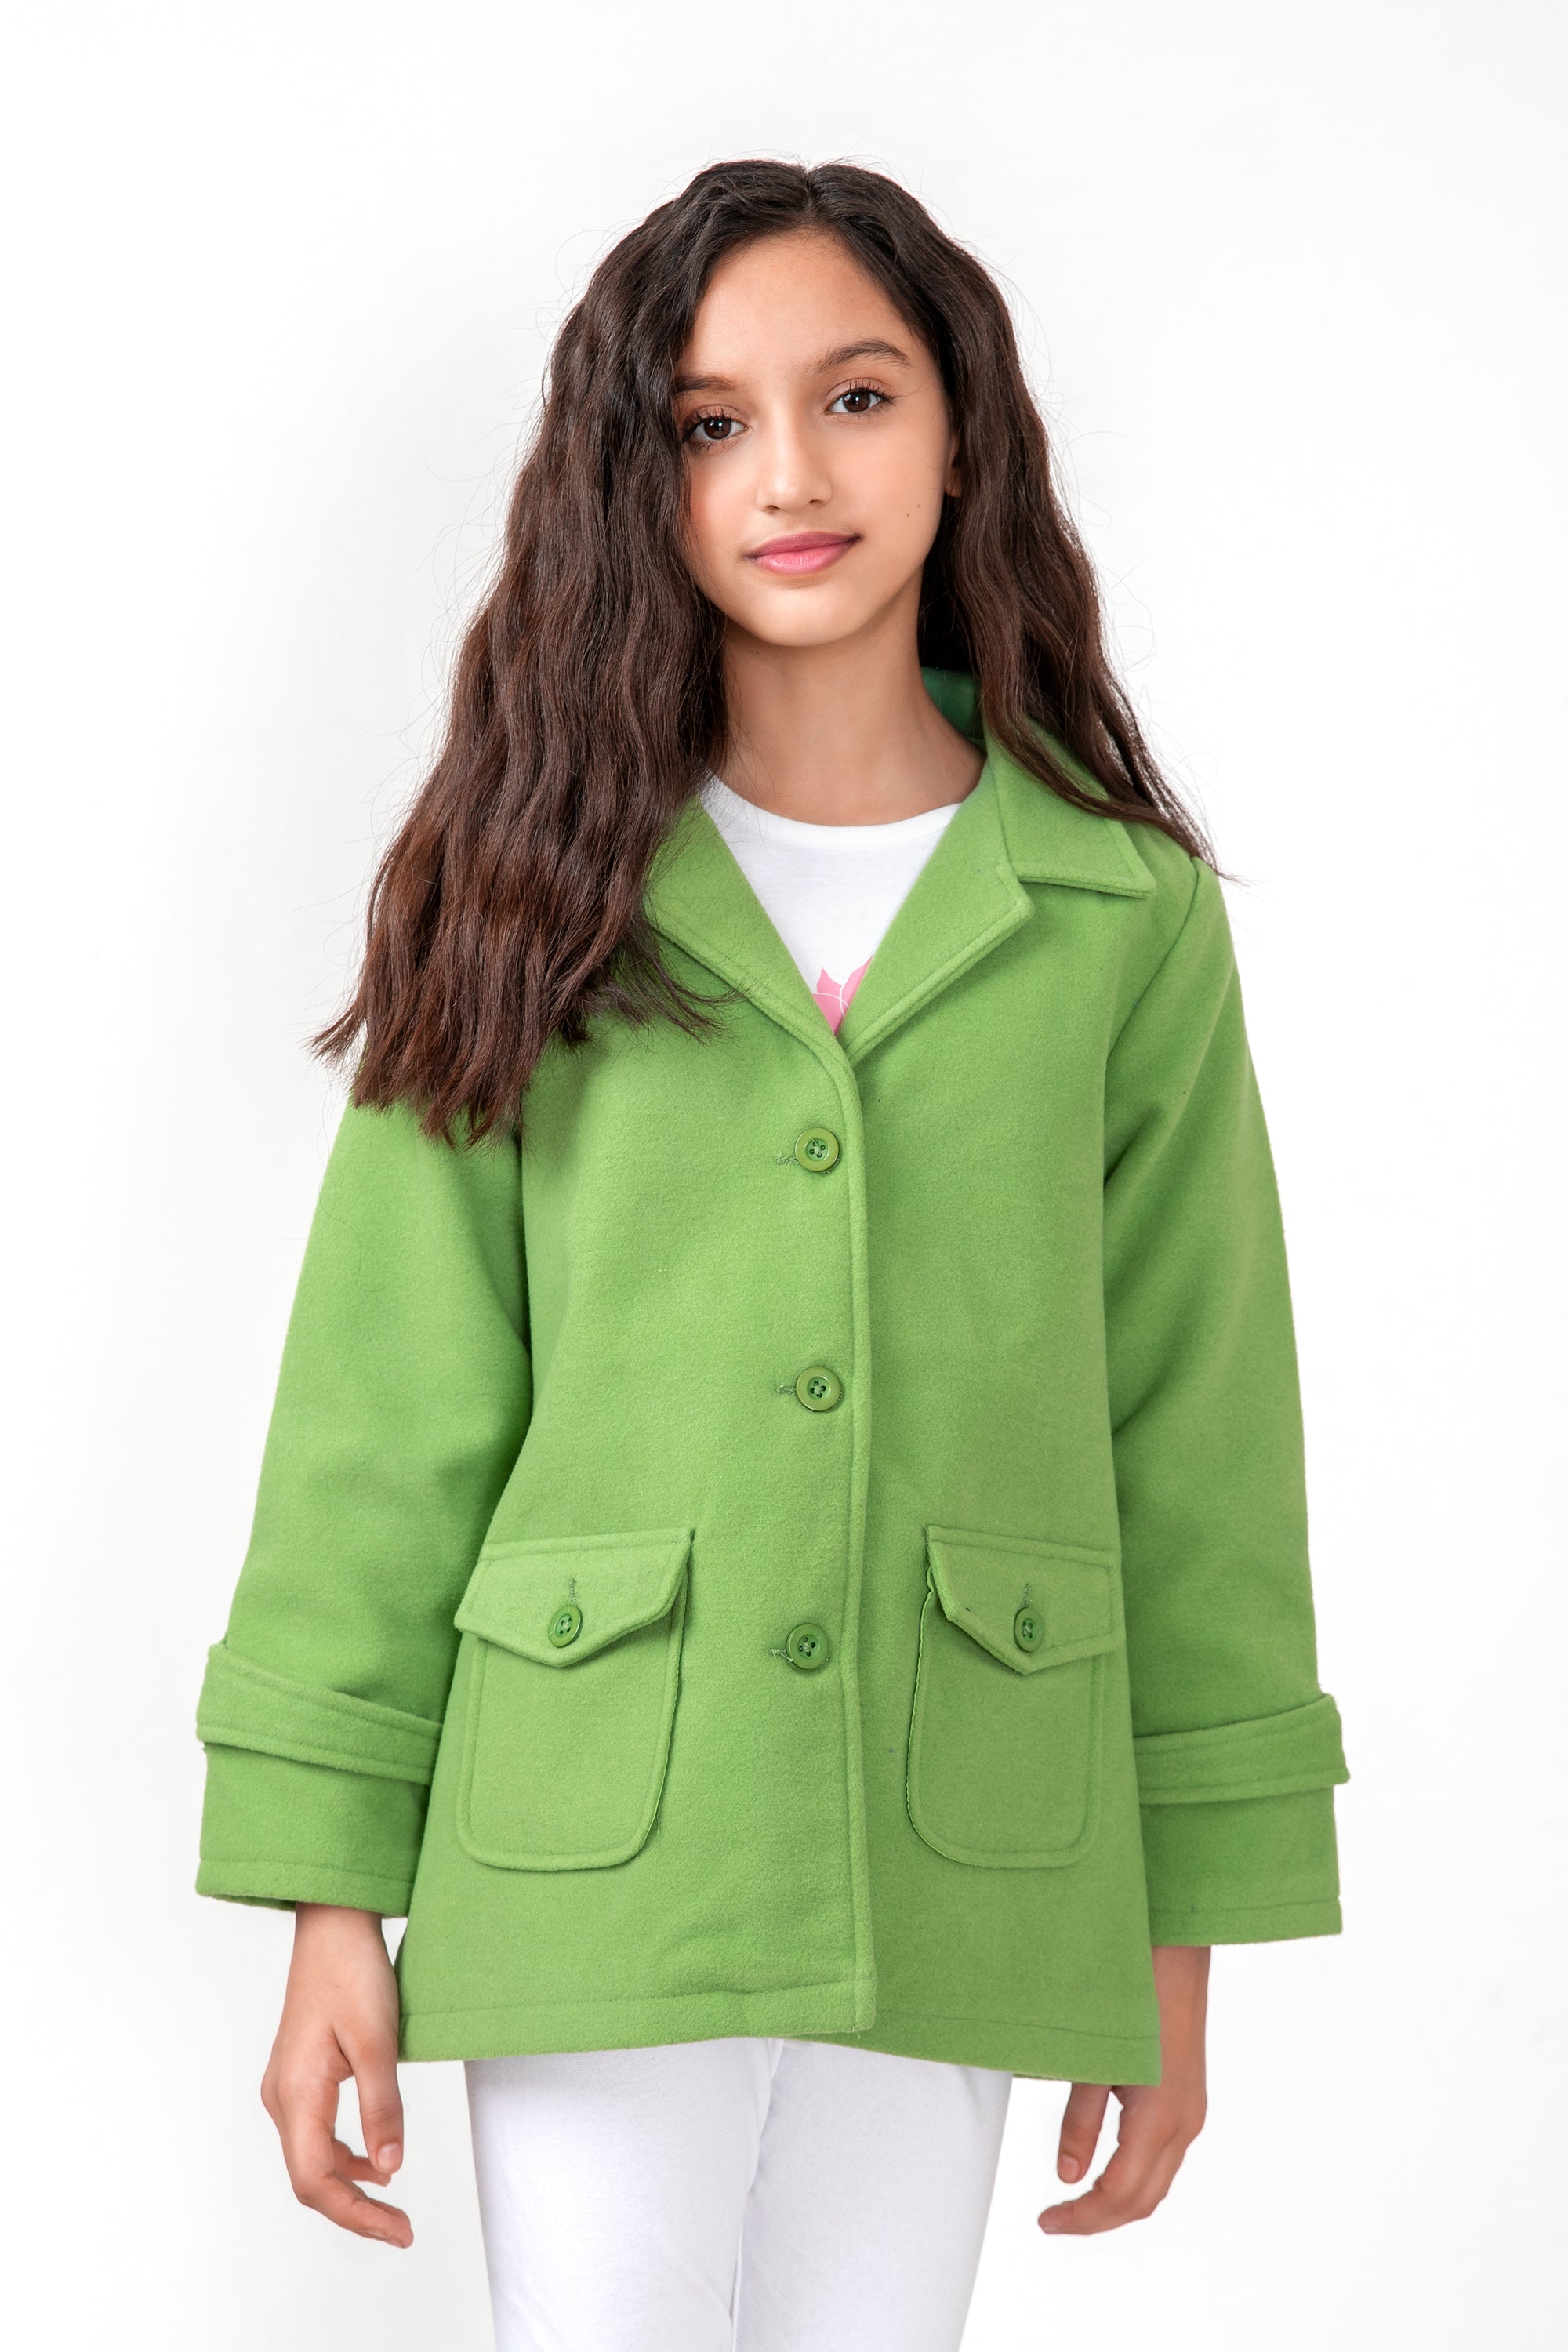 Girls Light Green Coat